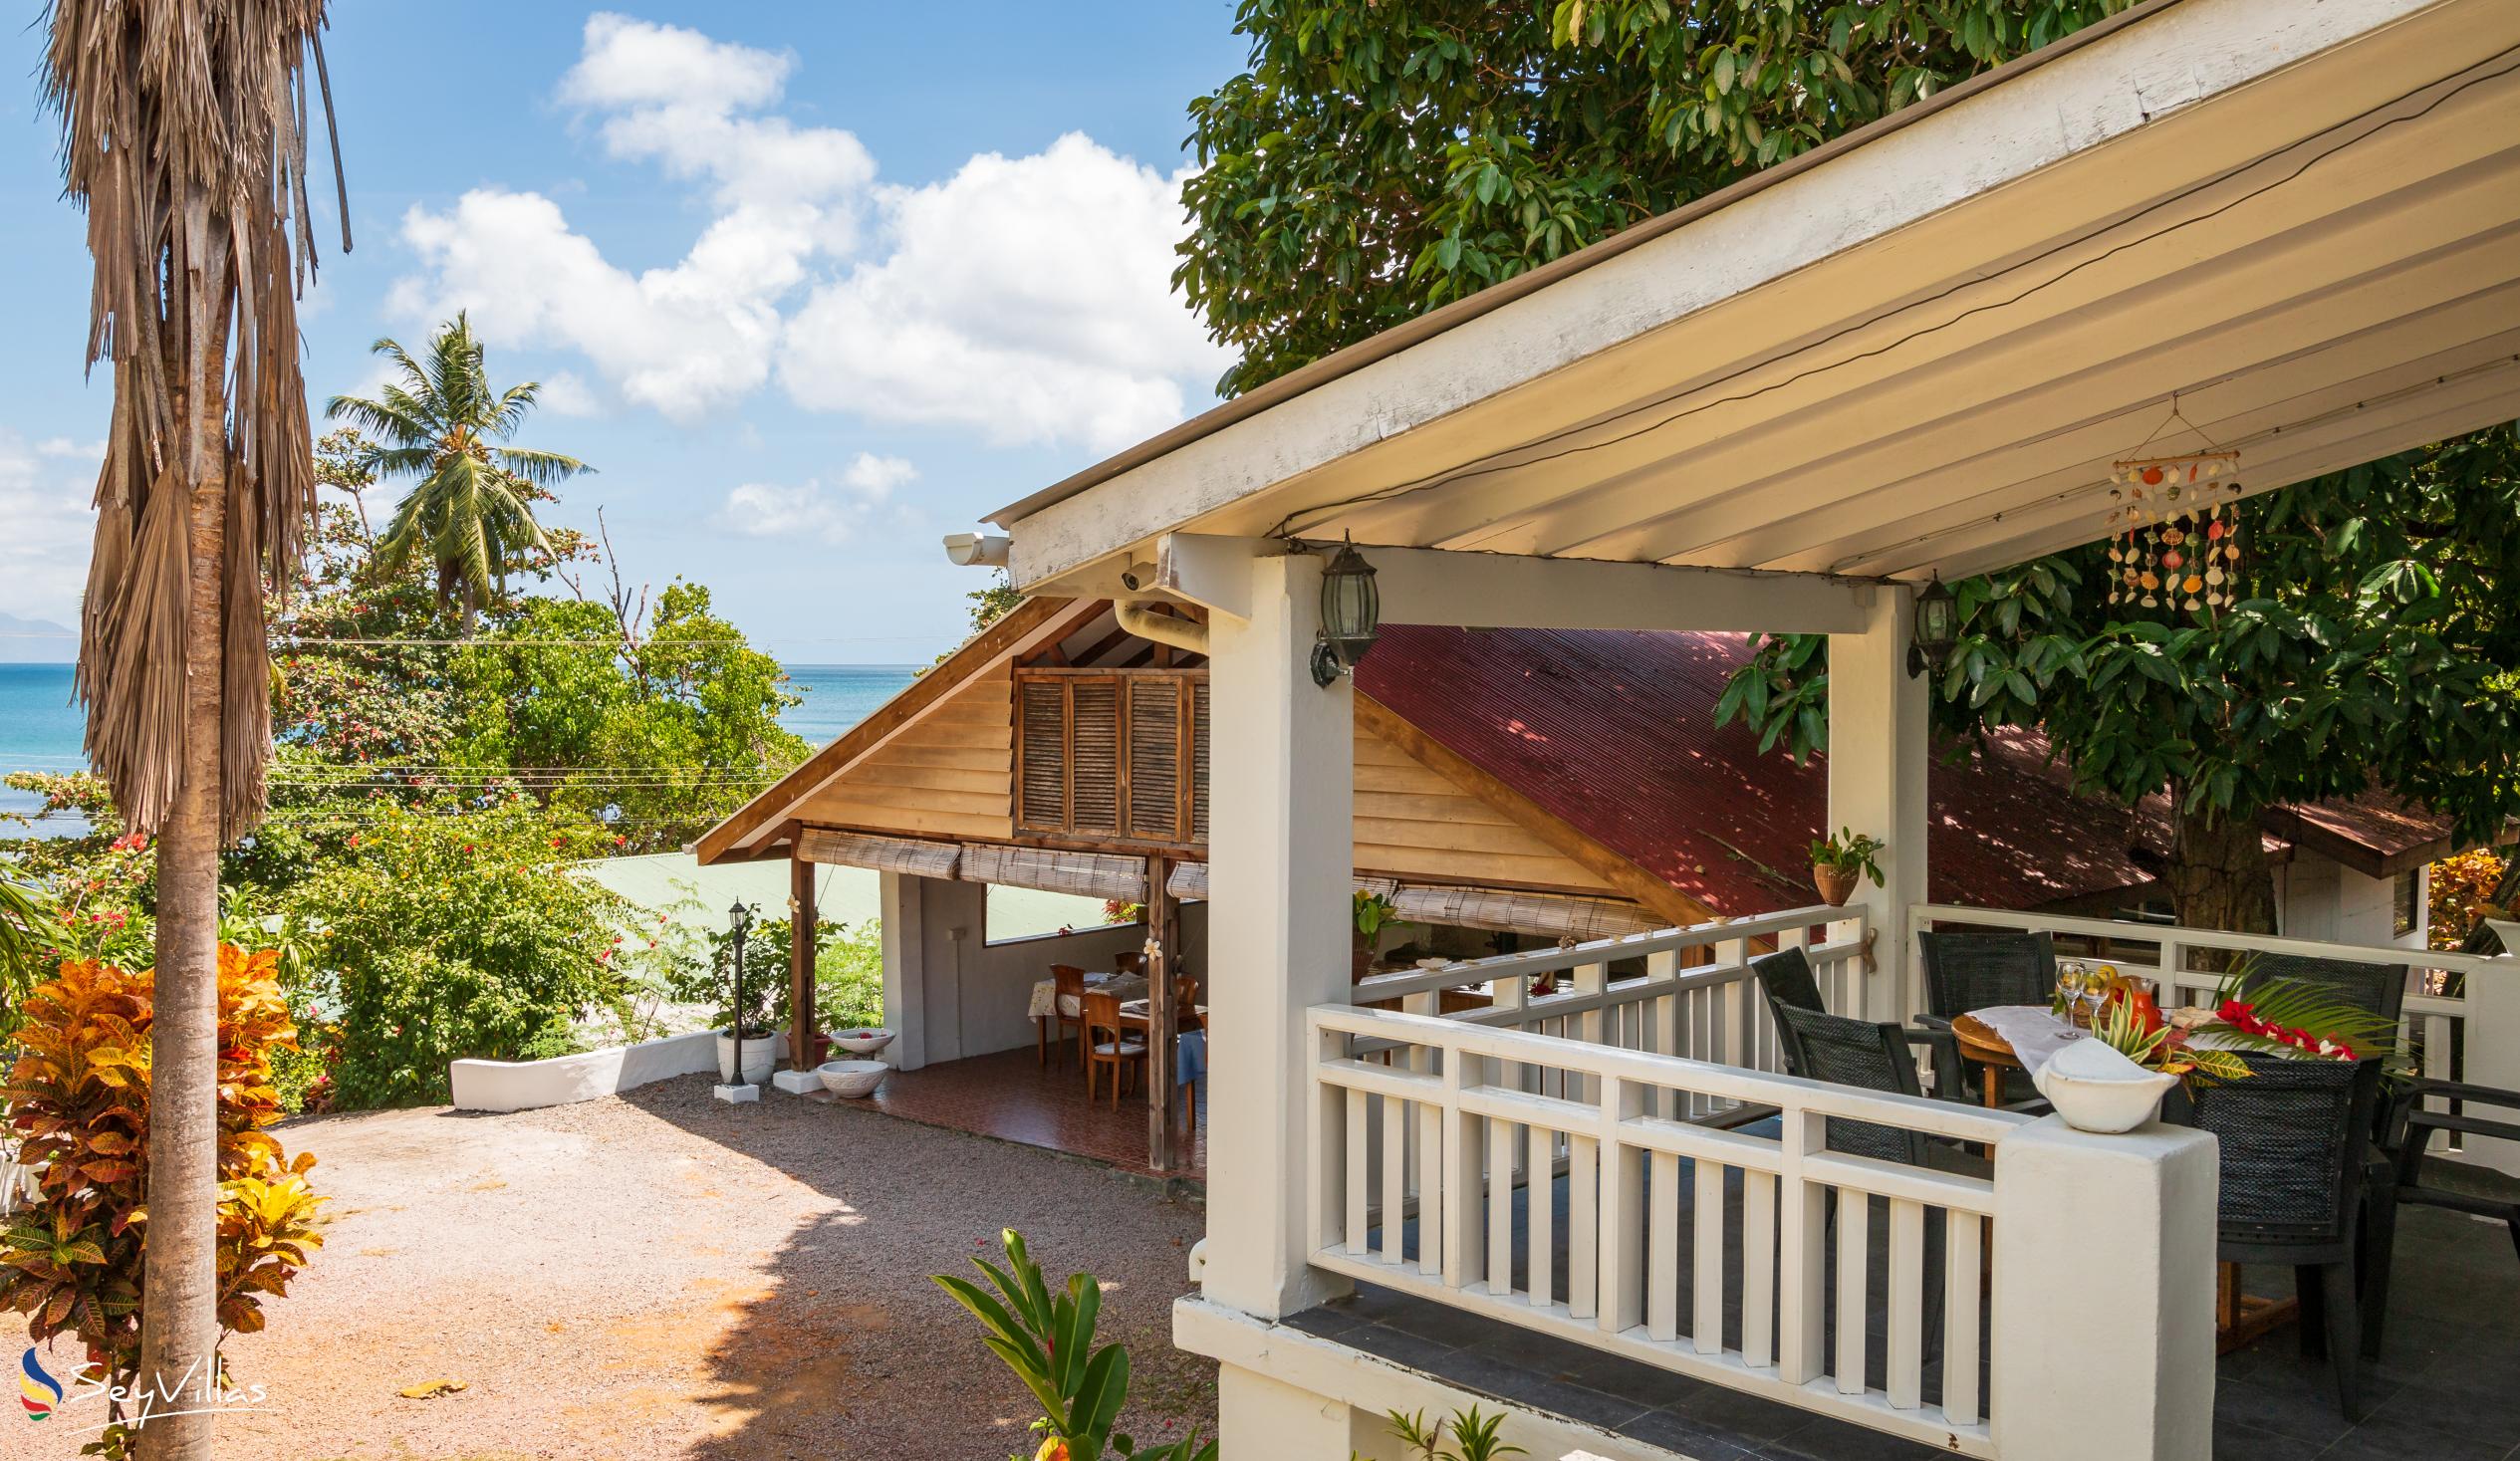 Foto 69: The Beach House (Chateau Martha) - Maison de vacances avec 1 chambre à coucher - Mahé (Seychelles)